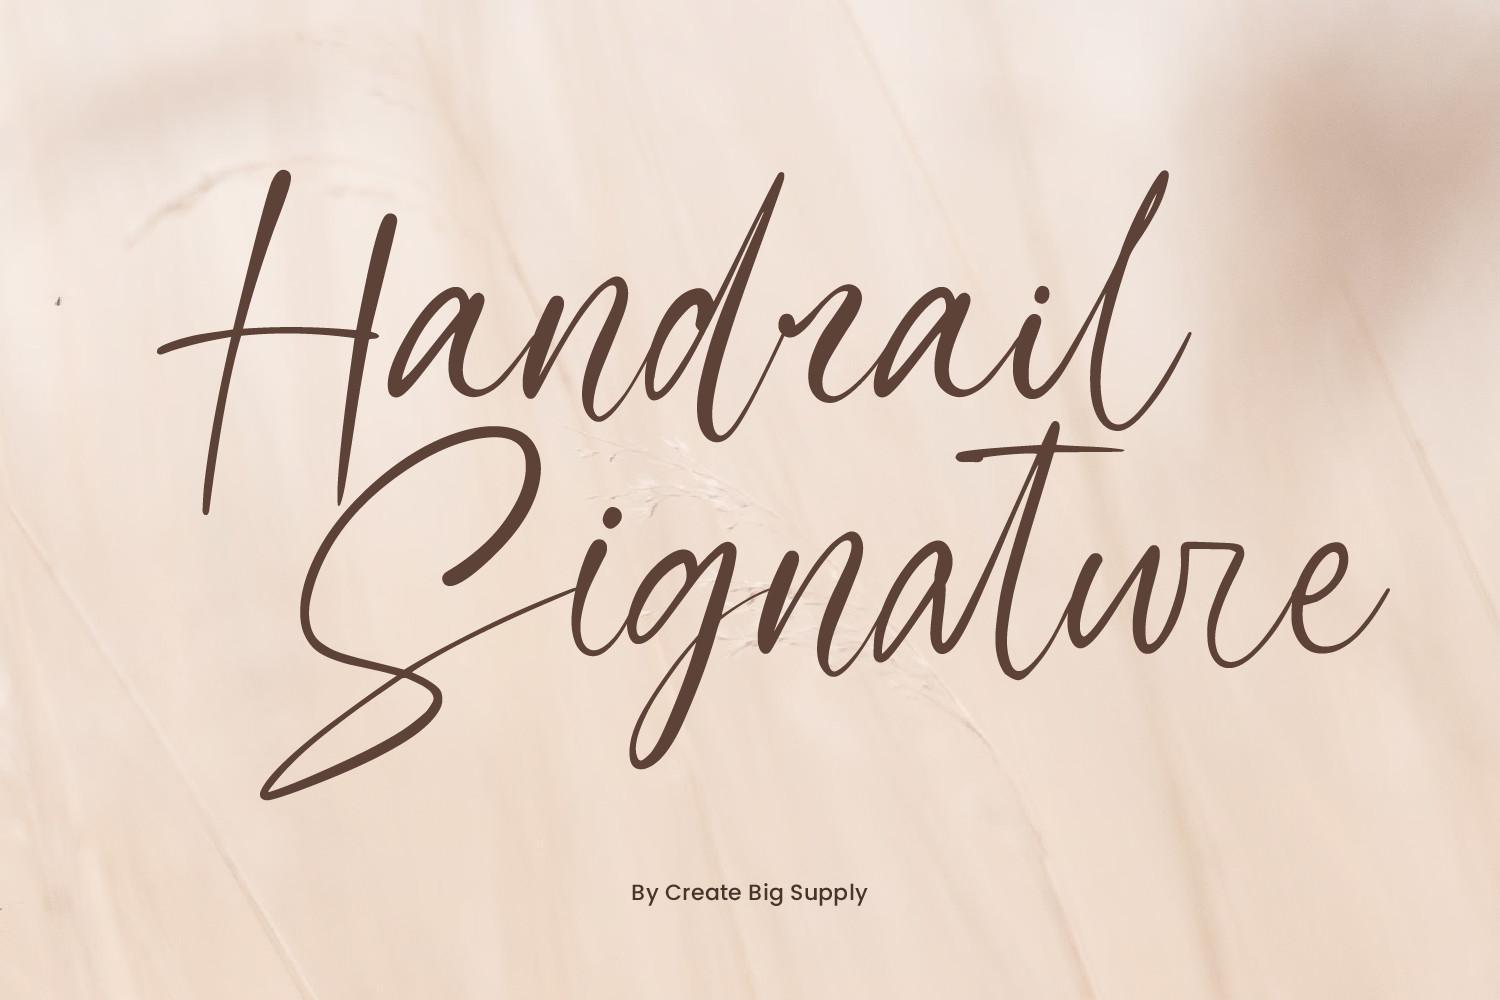 Handrail Signature Font